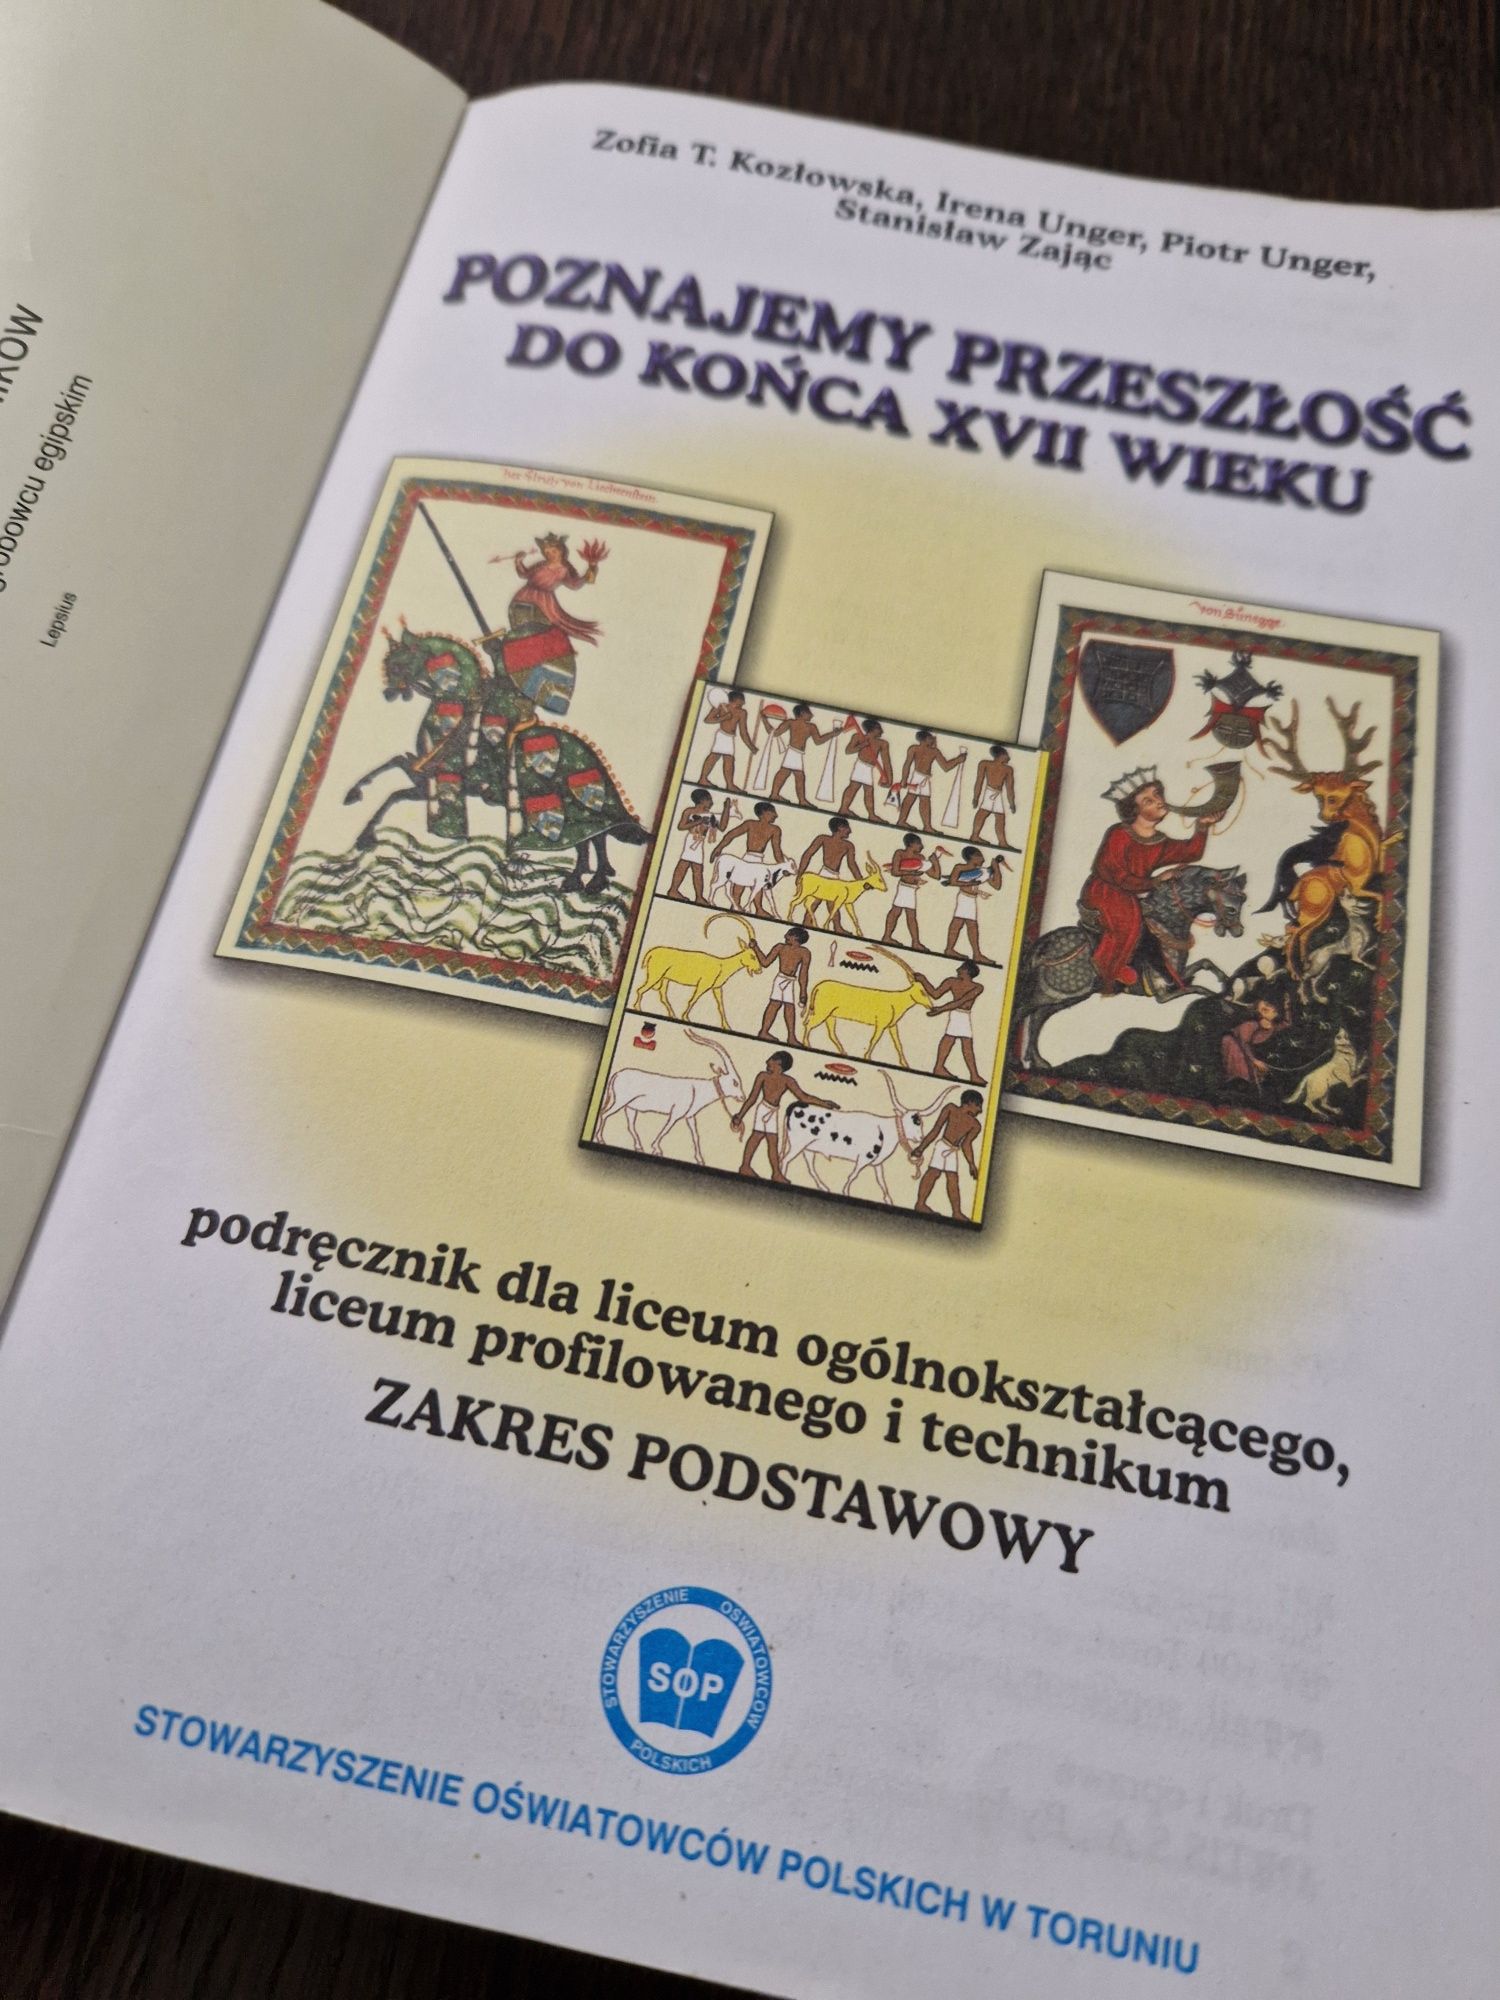 Podręczniki Historia Poznajemy przeszłość Kozłowska Unger  cz. 1 i 2